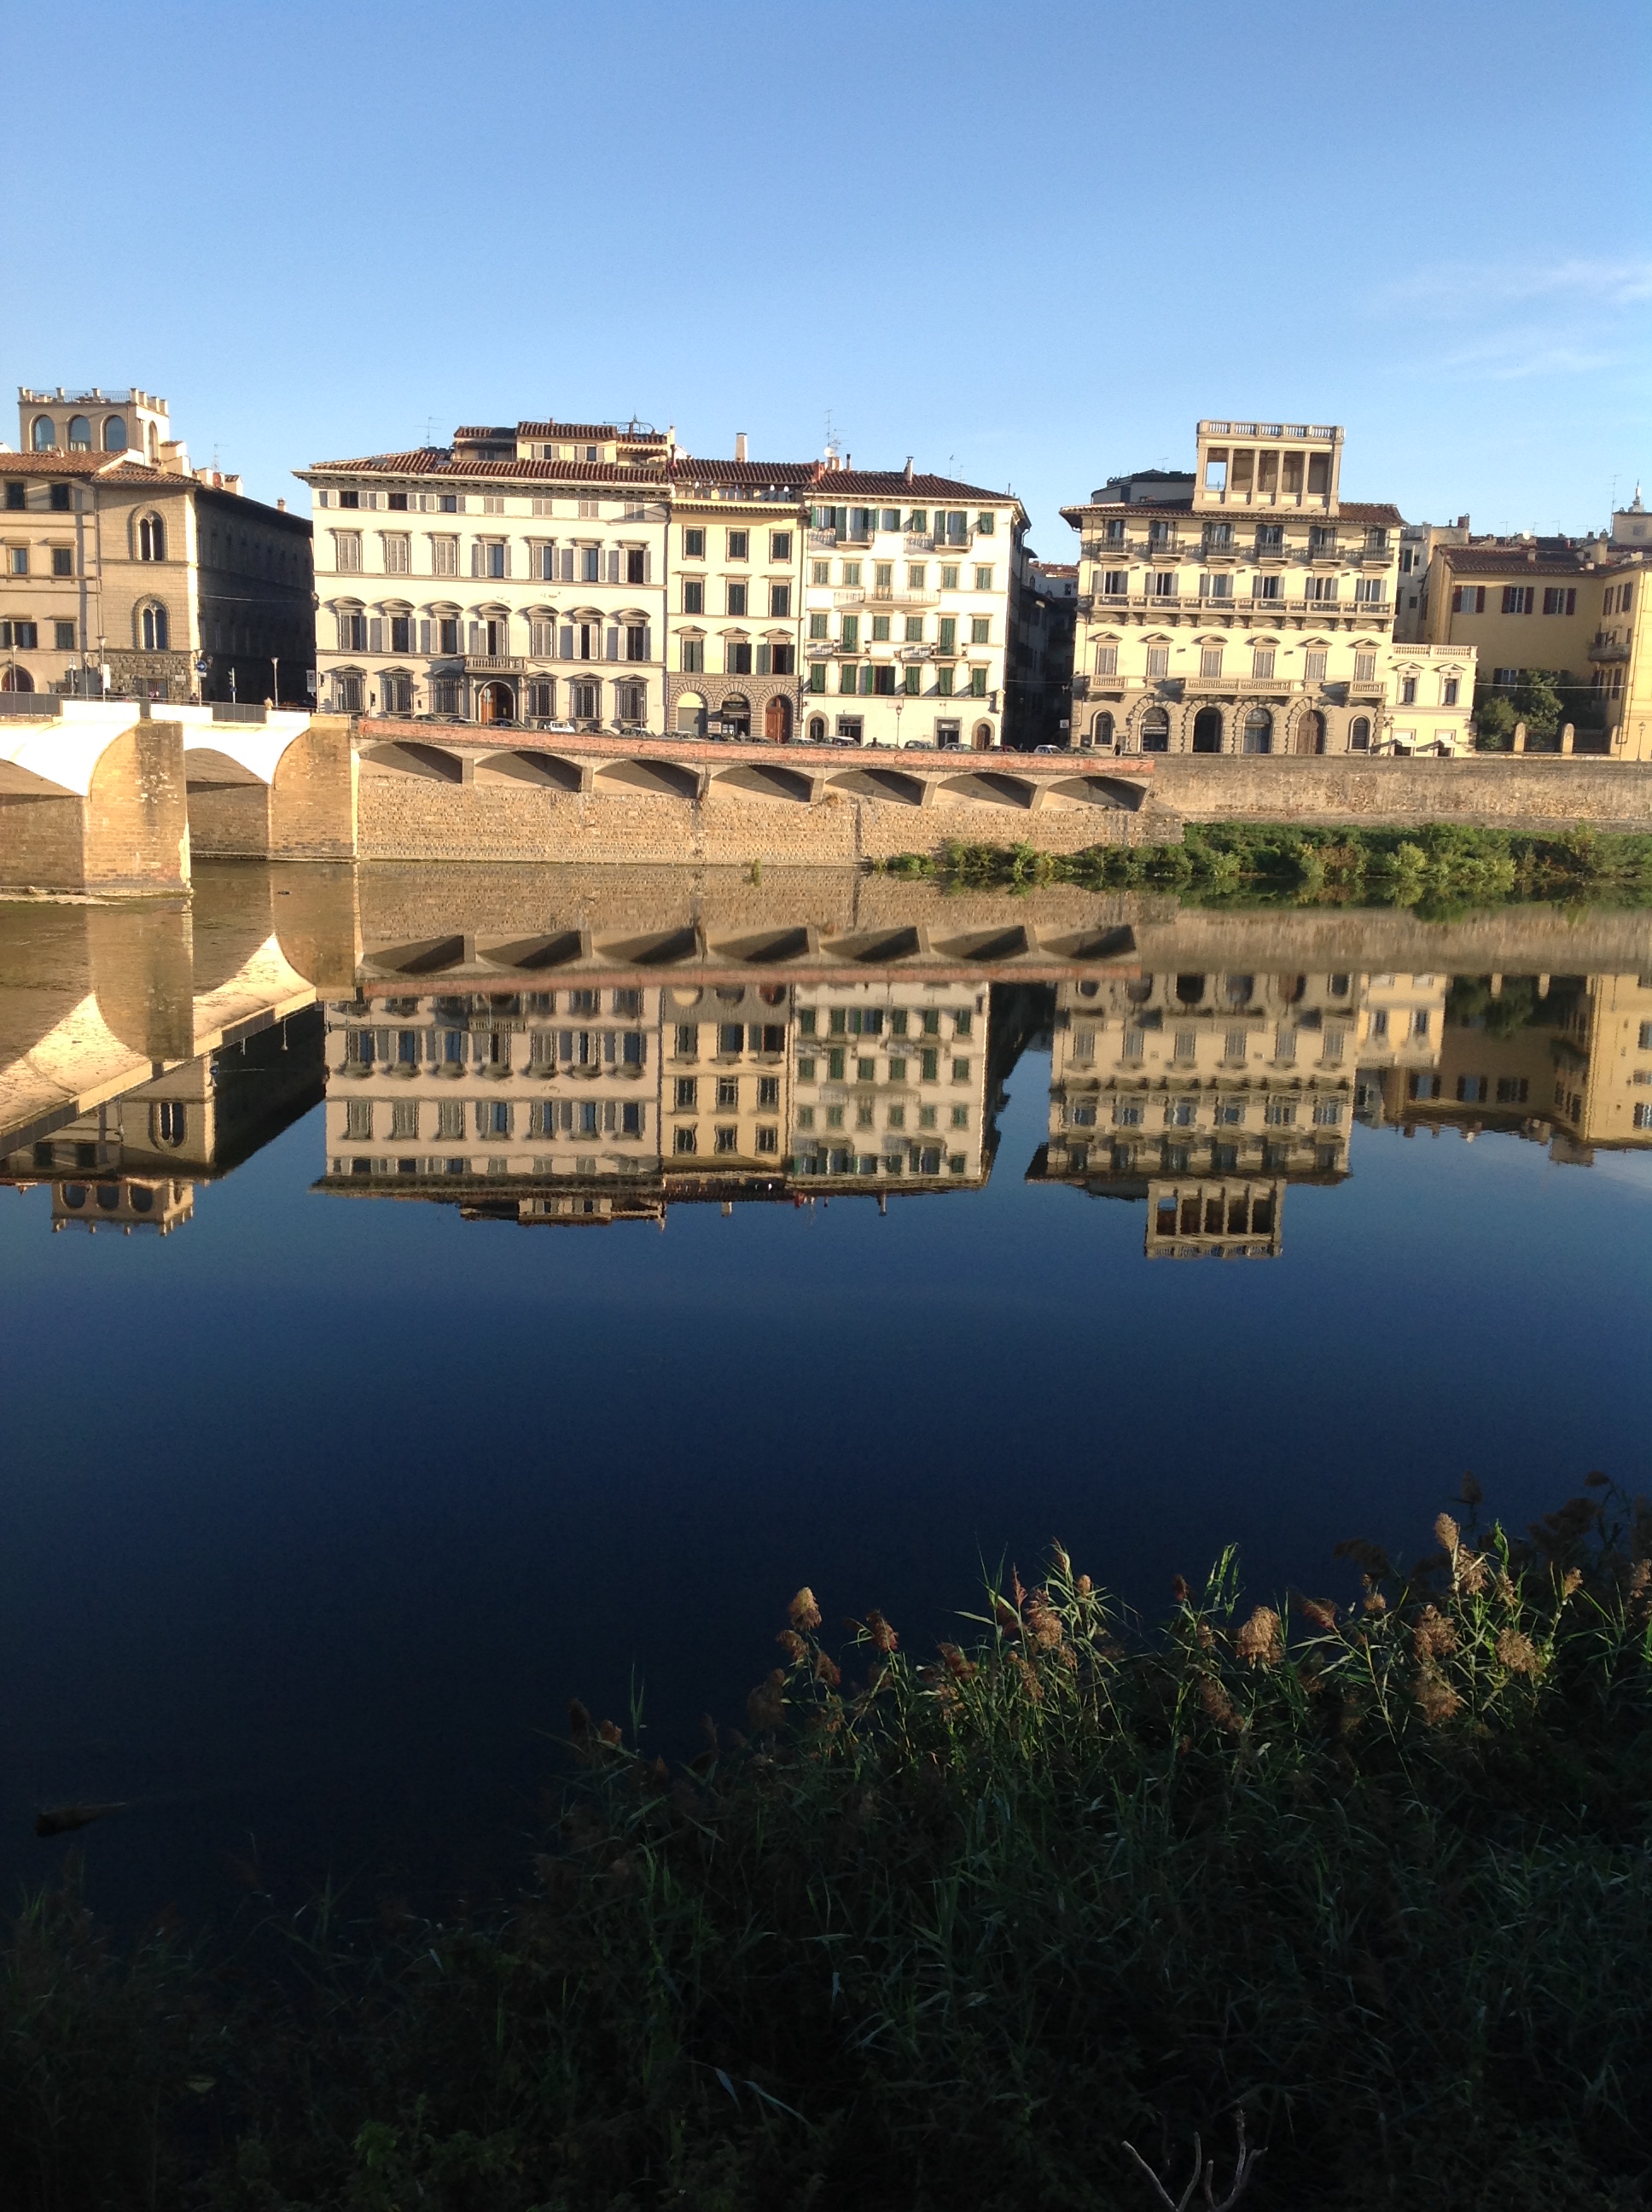 along the Arno